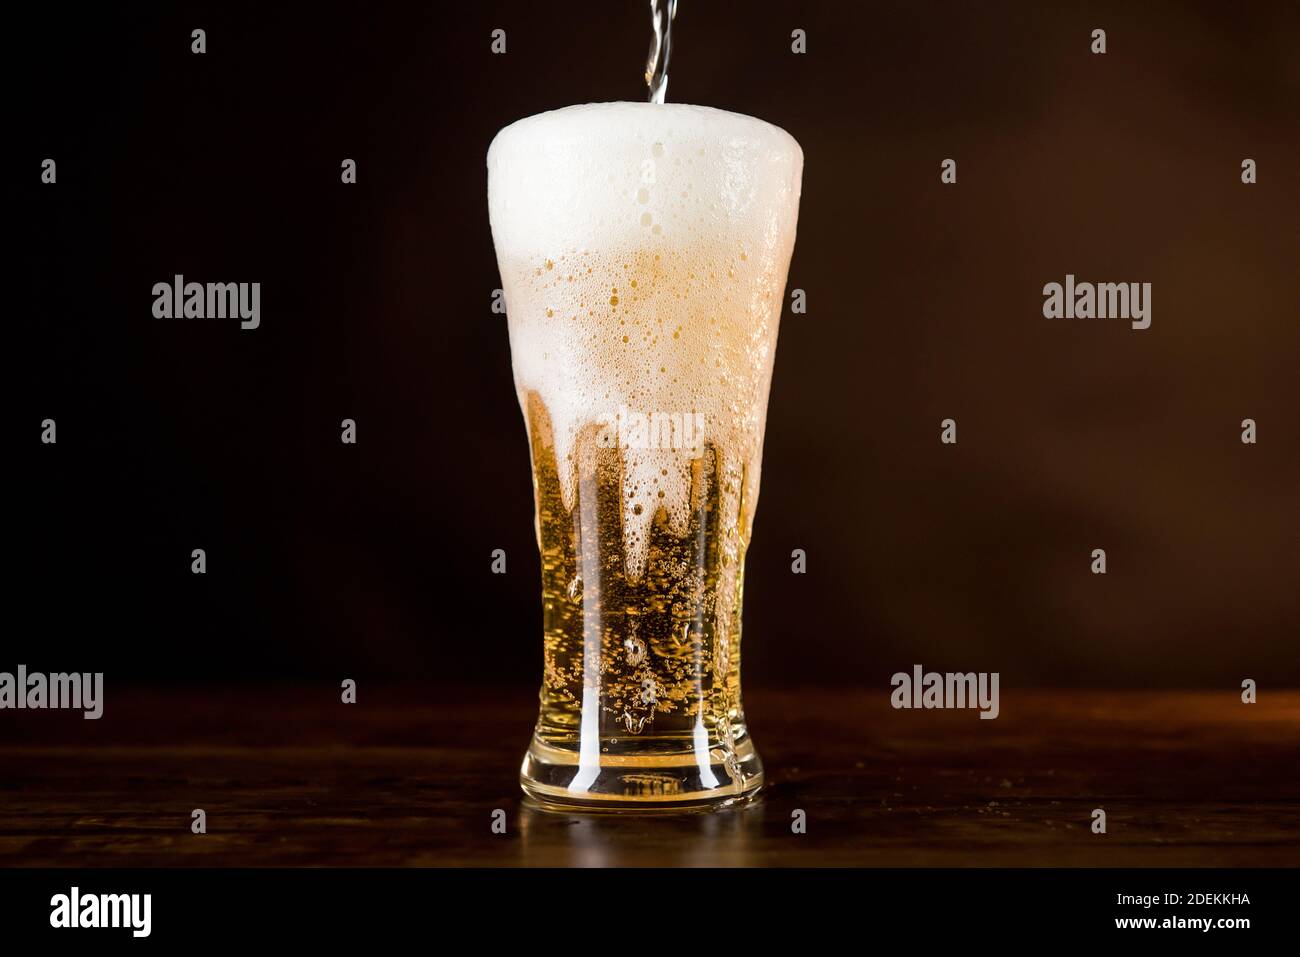 Песня холодное пиво пенится. Холодное пиво в бокале. Холодное пиво в стакане. Пиво светлое в стакане. Пиво наливается в бокал.